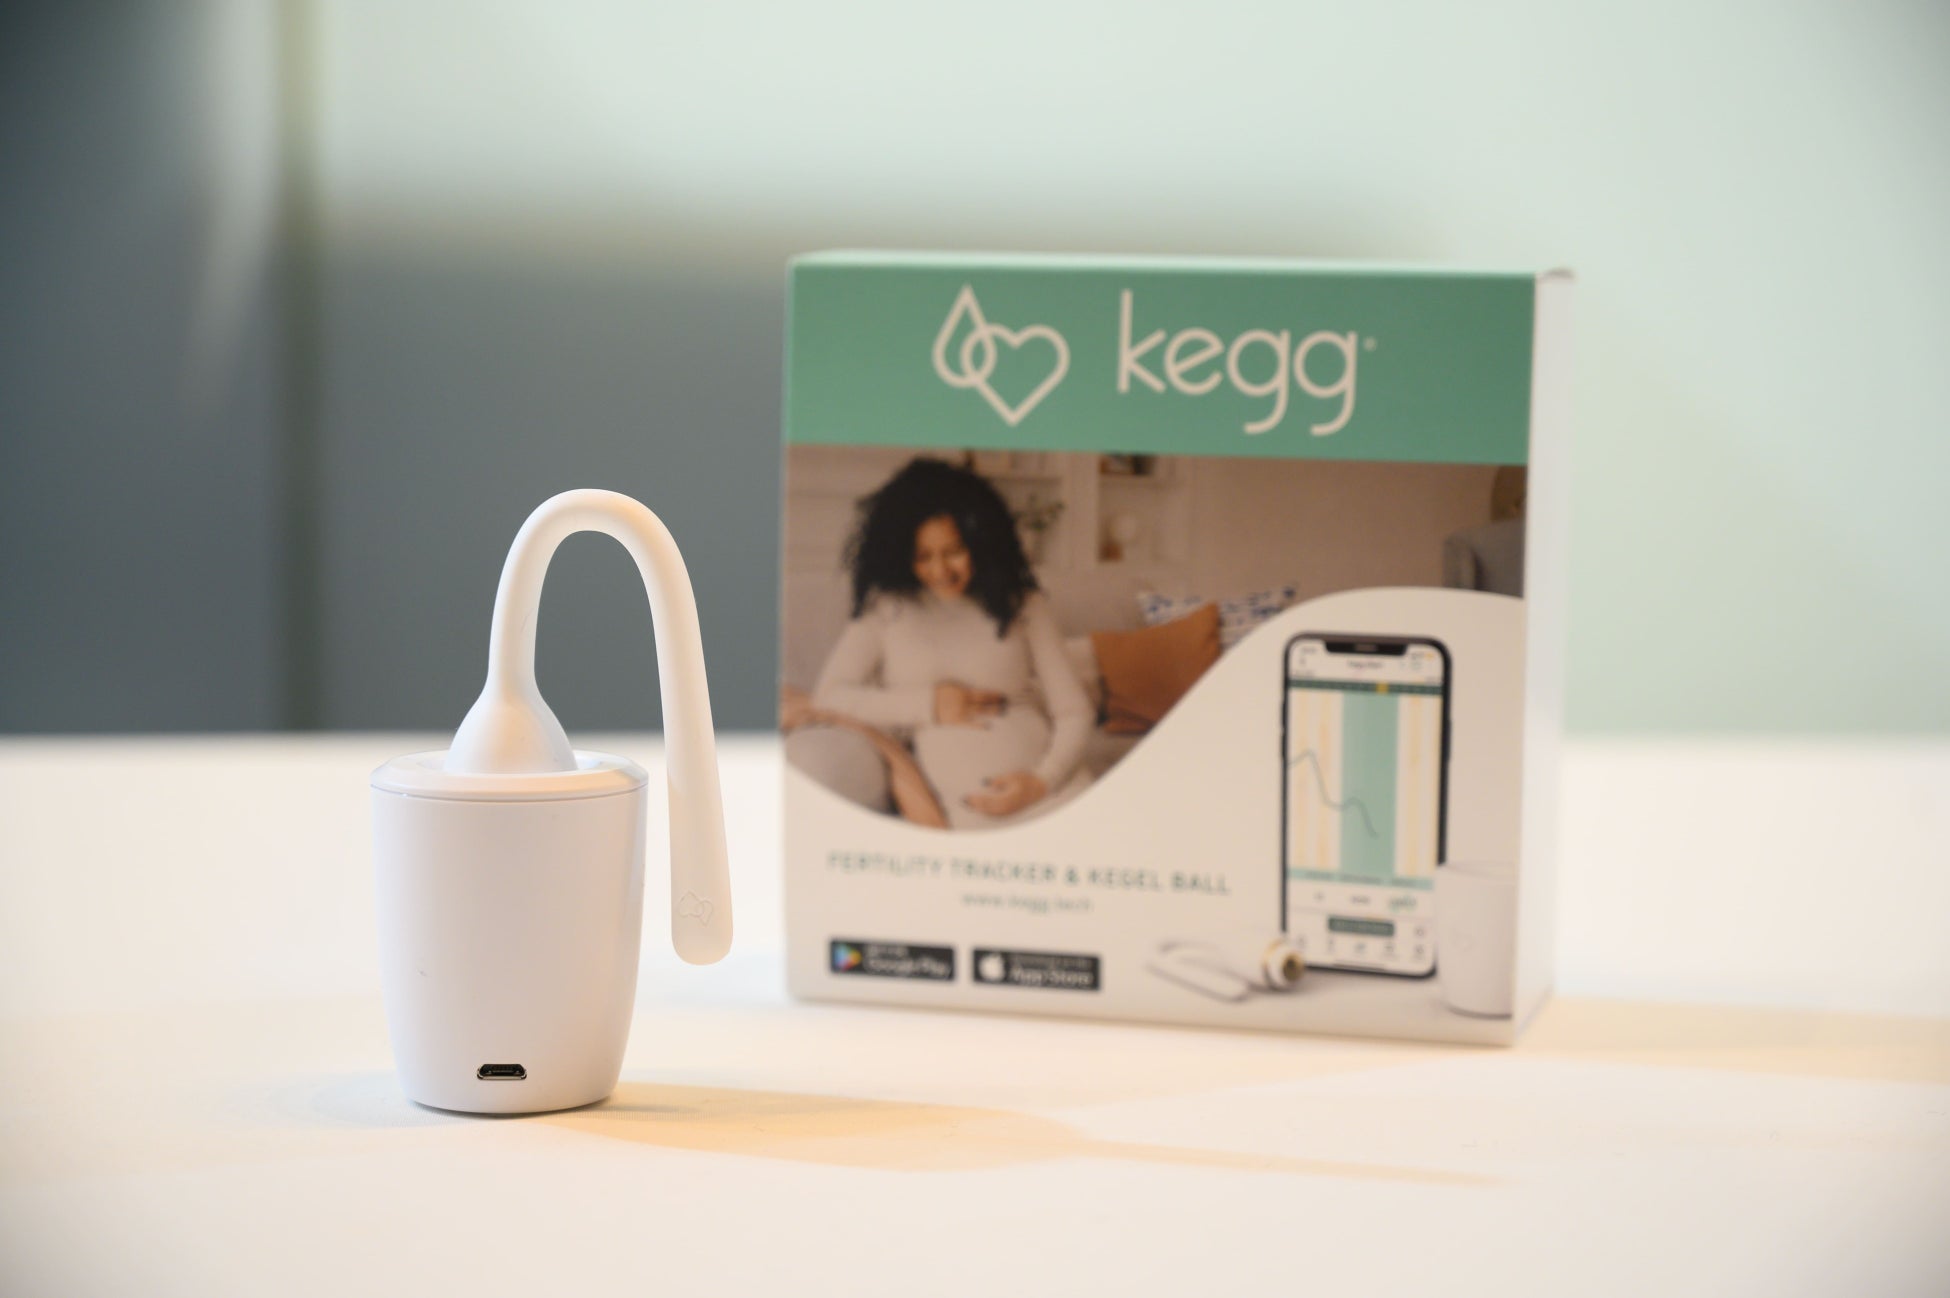 【フェルマータ(株)】自宅で使える妊活サポートIoTデバイス「Kegg（ケグ）」、日本で一般医療機器としての届...